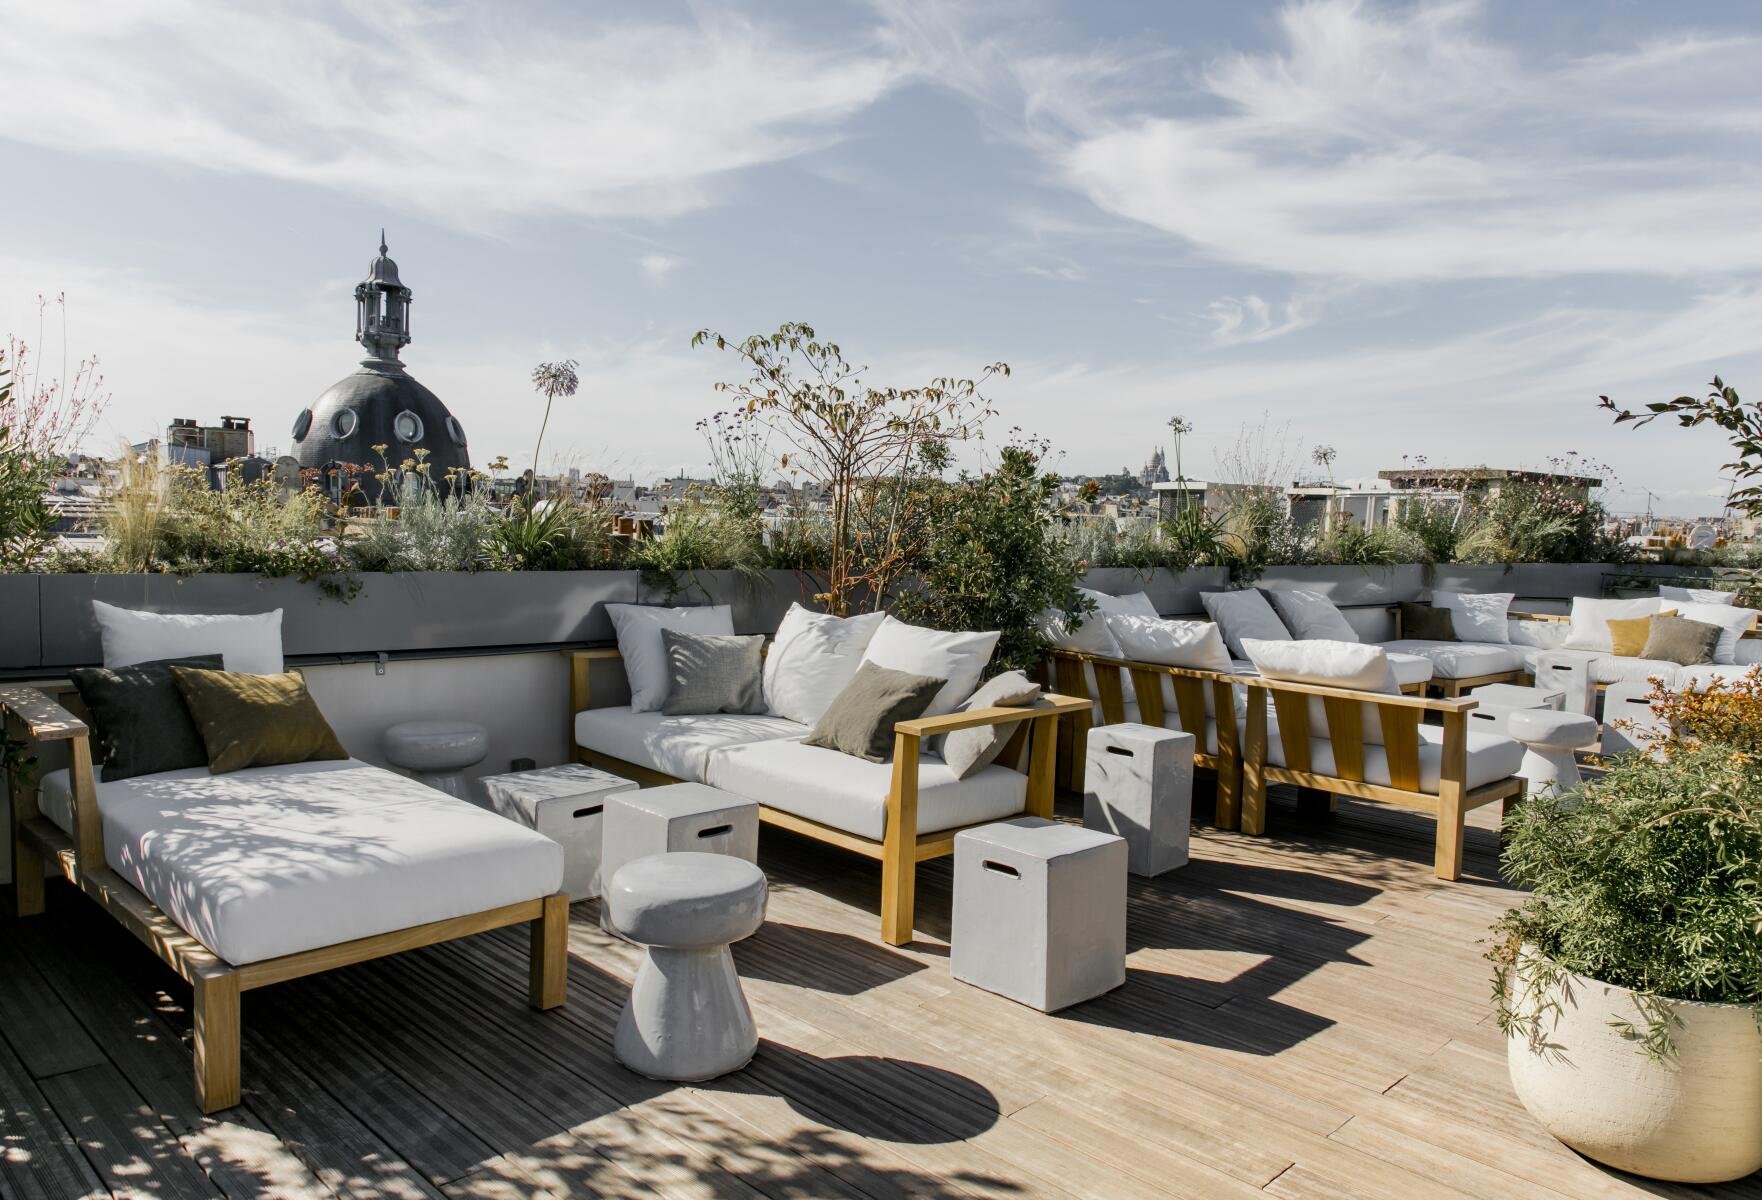 Hôtel National des Arts et Métiers | Drinking on a rooftop in République